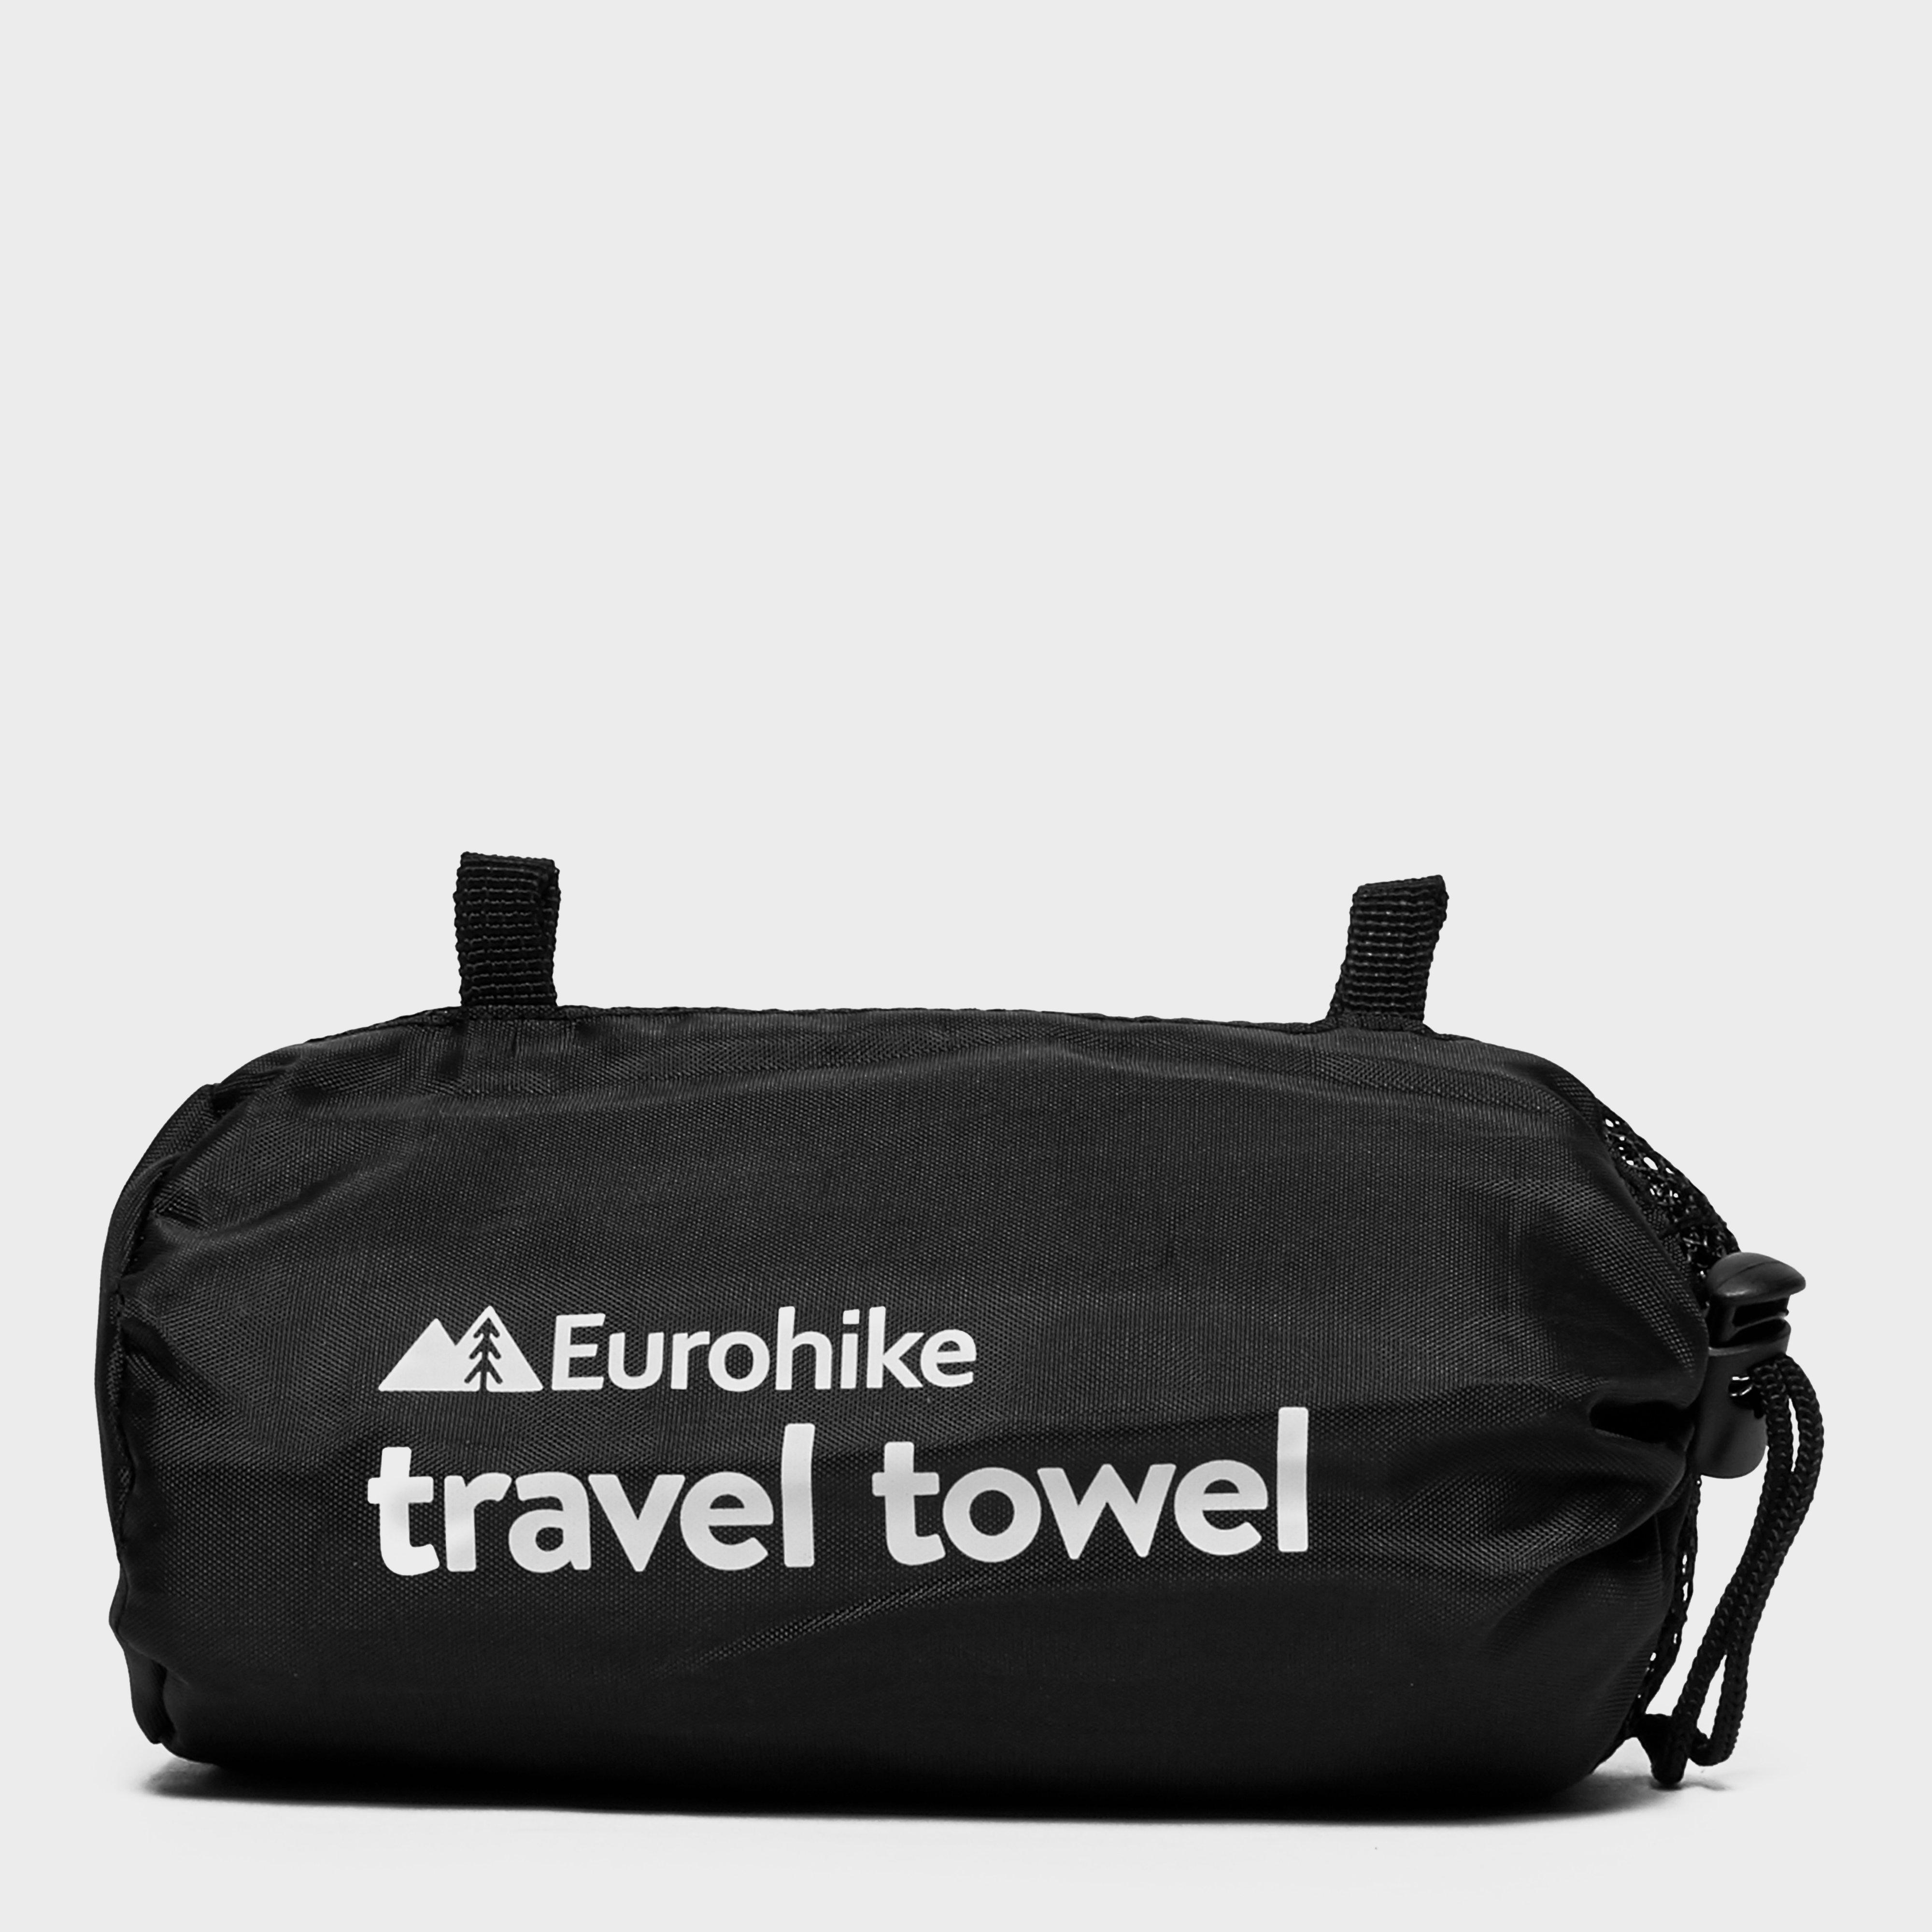 Eurohike Microfibre Suede Travel Towel – Medium Review